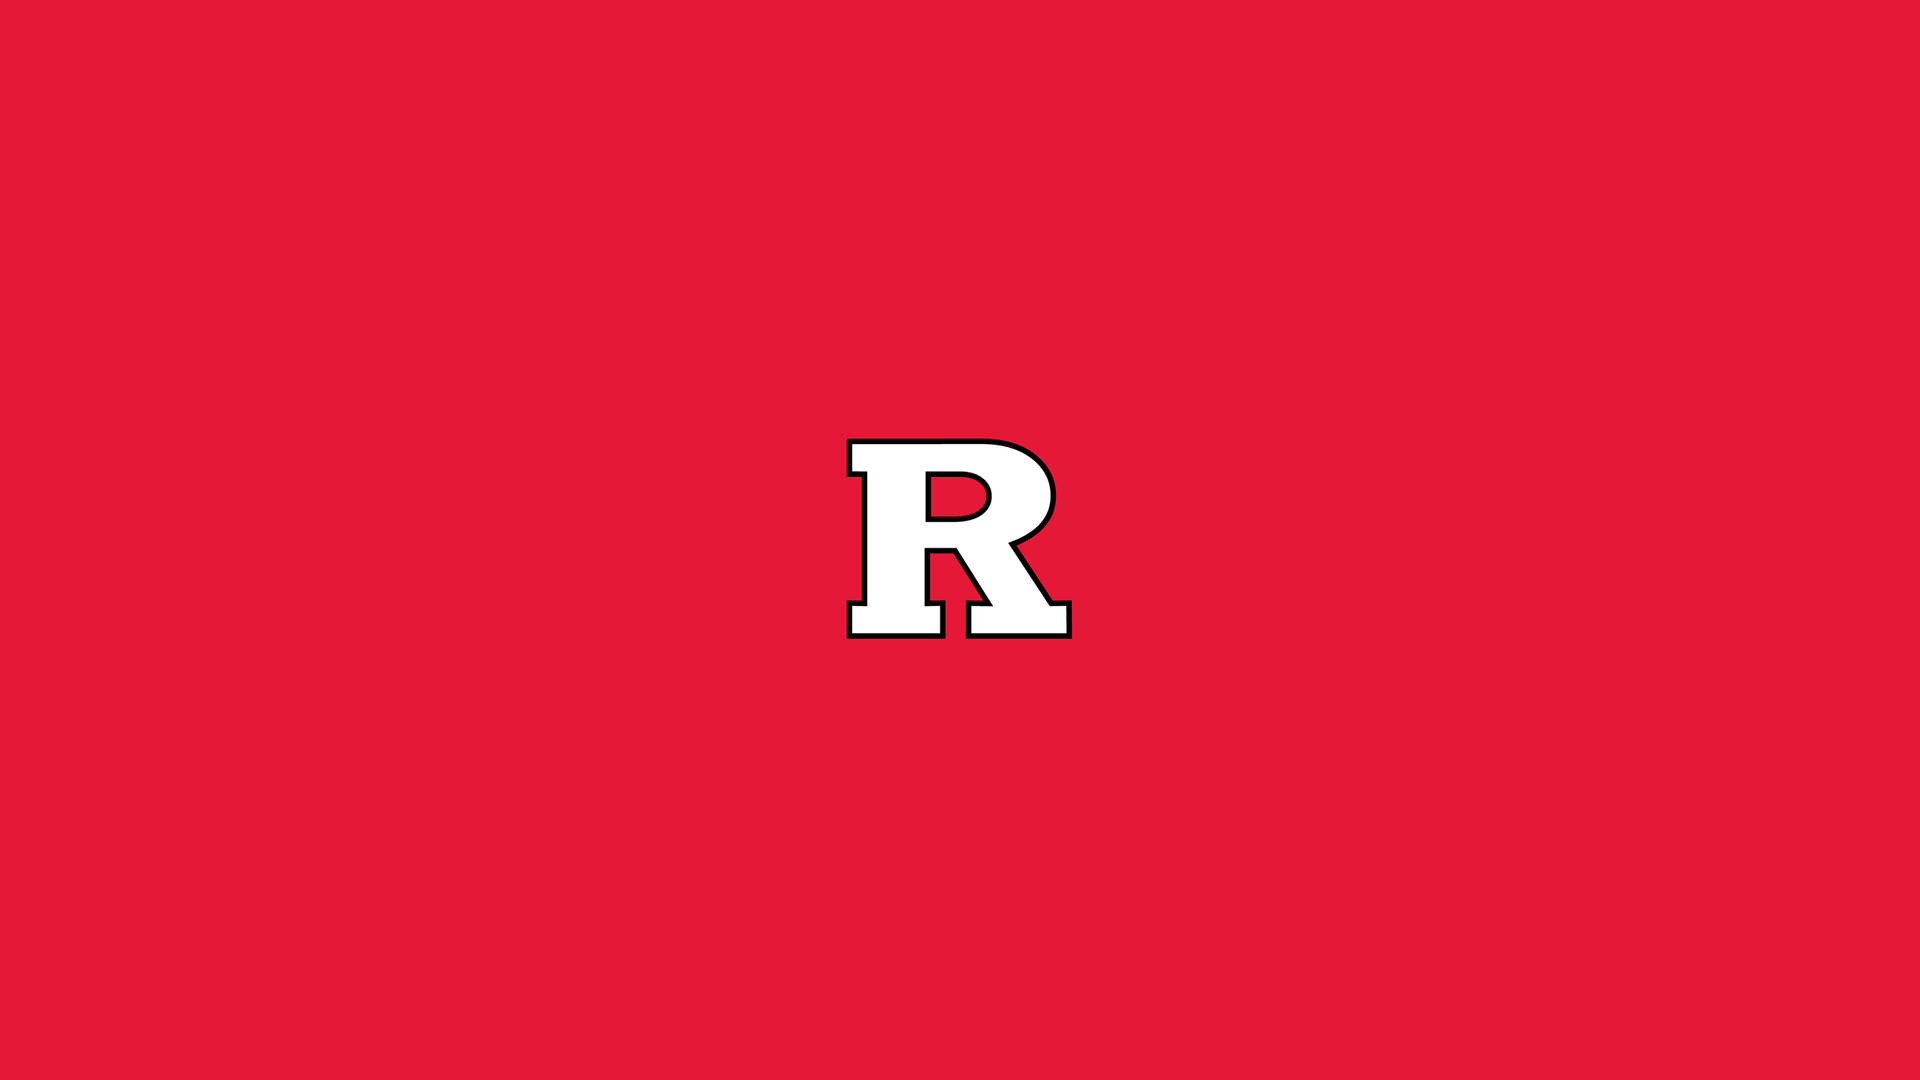 Rutgers 2560 X 1440 Wallpaper